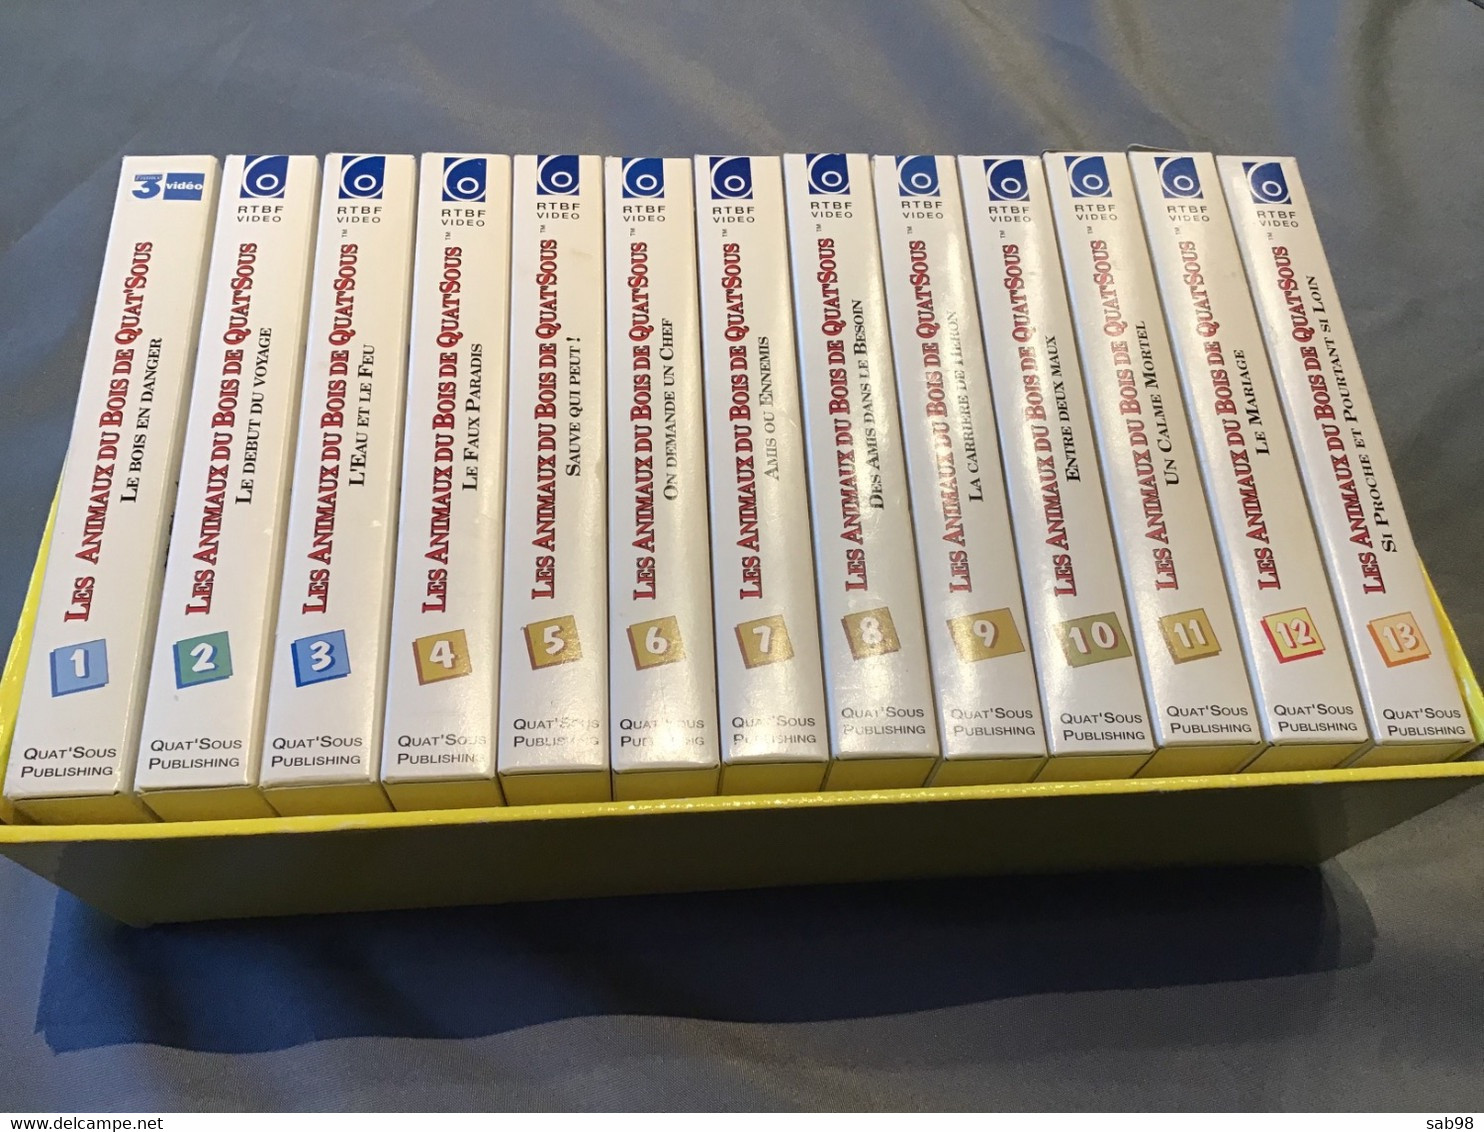 Les animaux du Bois de Quat’Sous Lot de 13 cassettes VHS Introuvable dans la plupart des commerces Carton et VHS de 1992